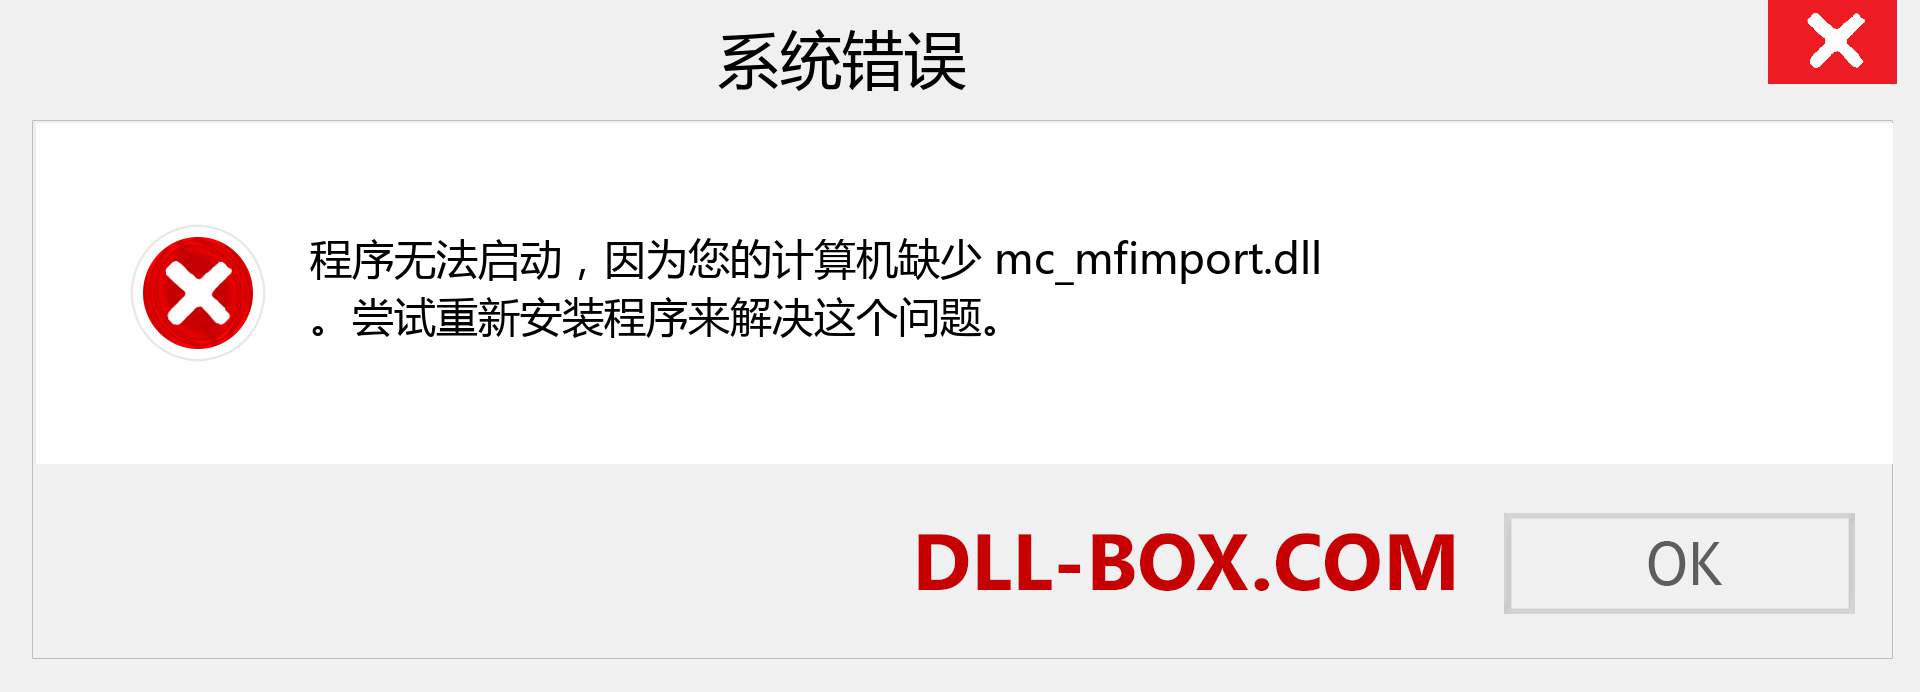 mc_mfimport.dll 文件丢失？。 适用于 Windows 7、8、10 的下载 - 修复 Windows、照片、图像上的 mc_mfimport dll 丢失错误